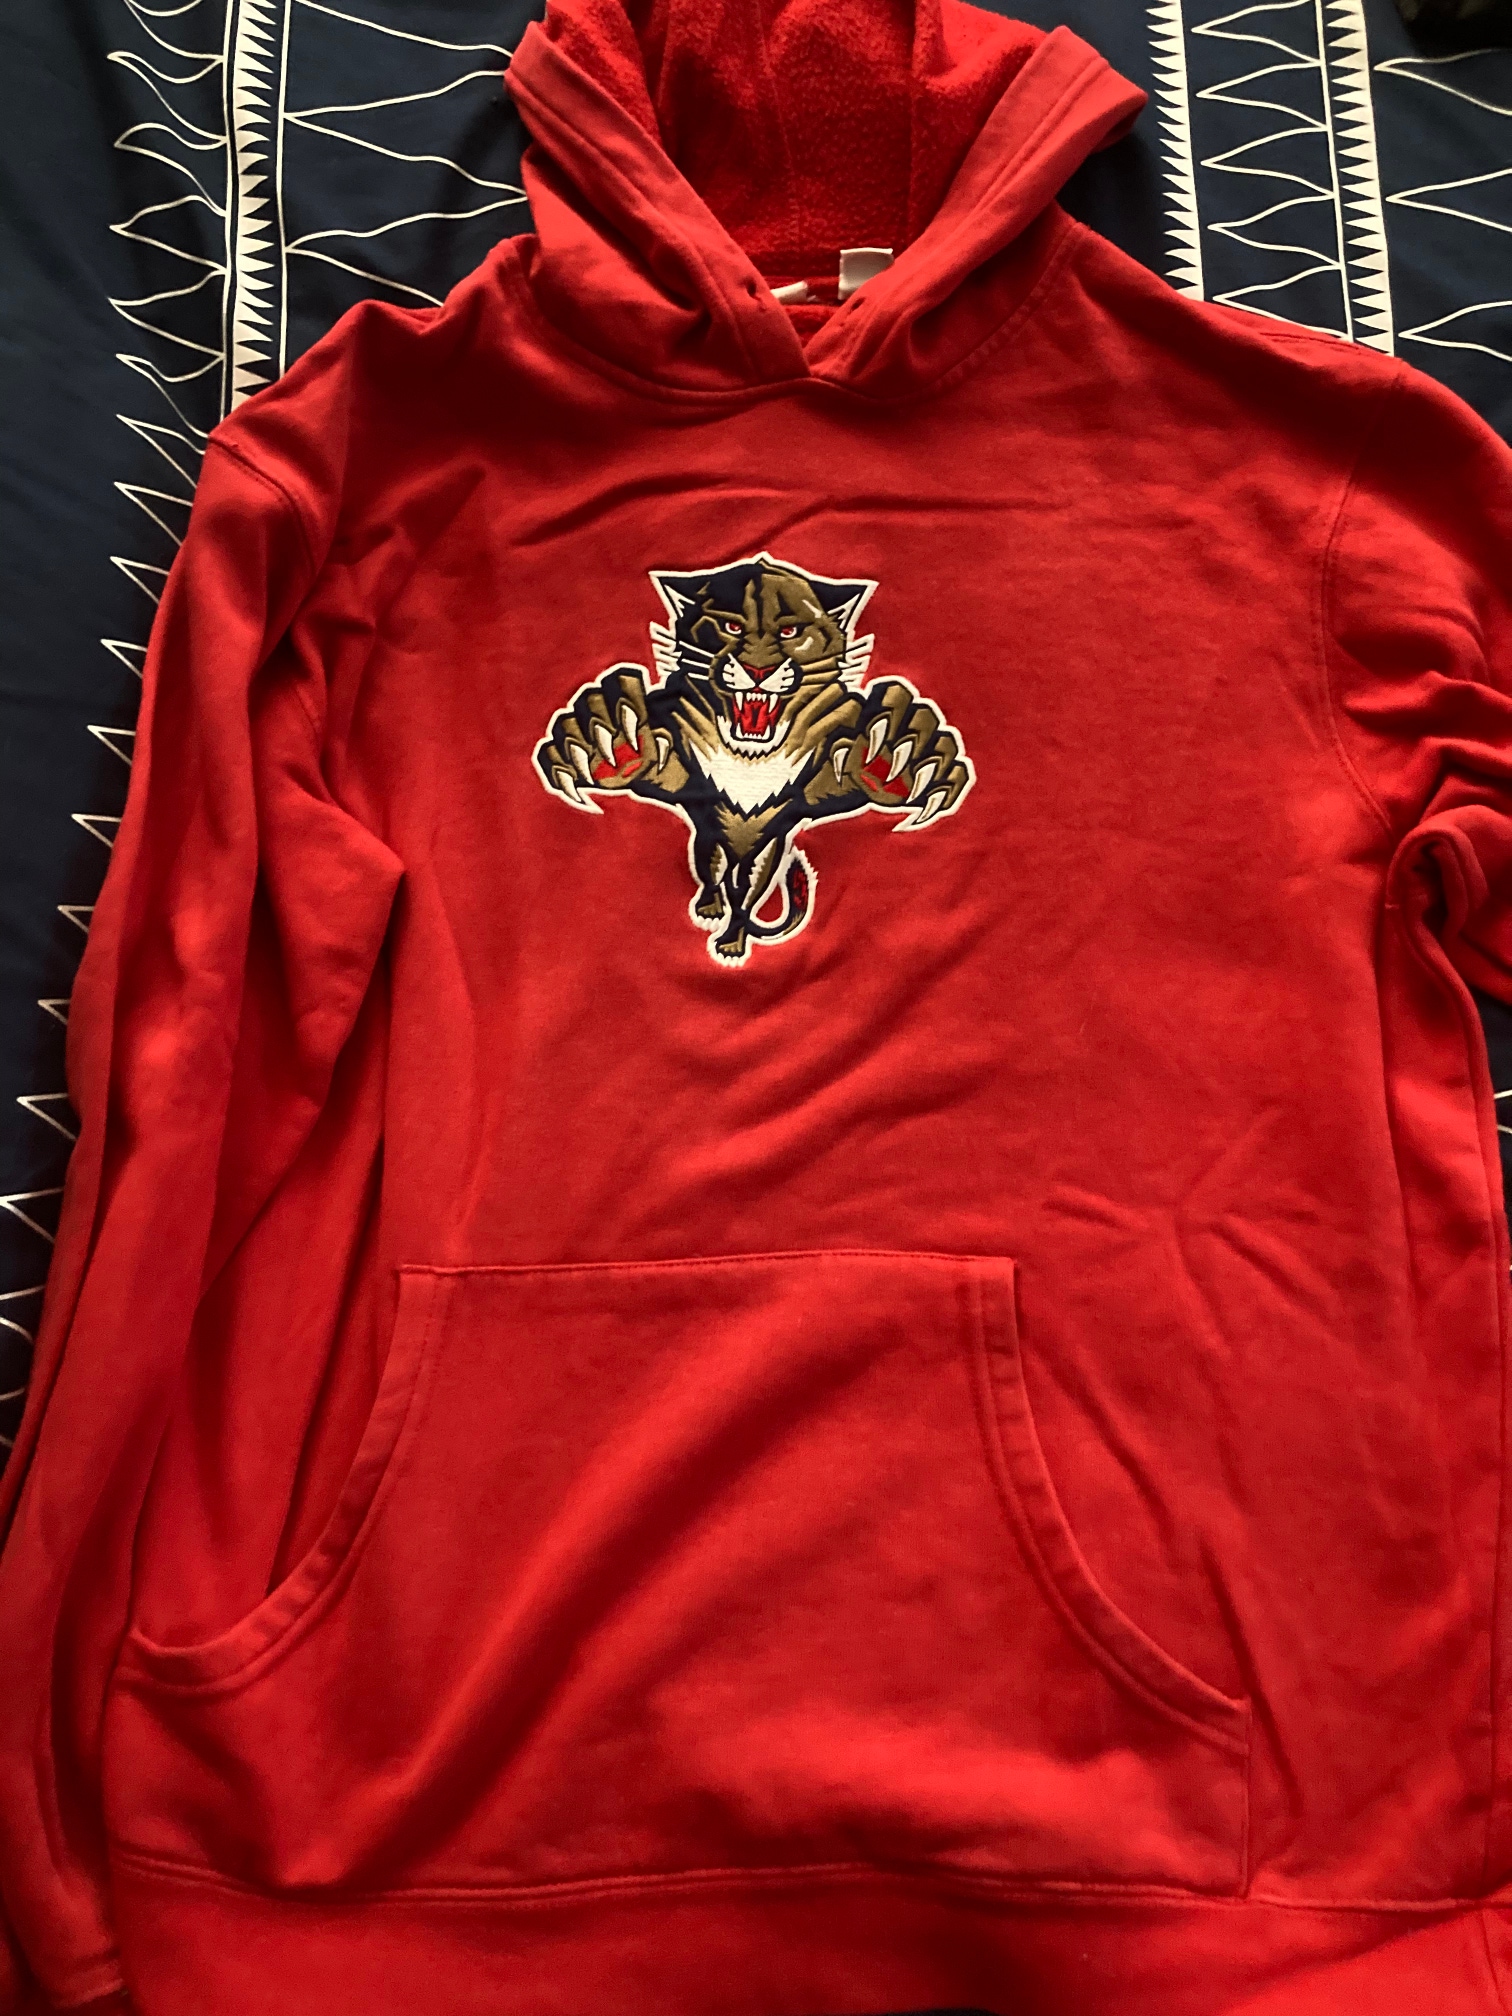 Florida Panthers Used Men's Medium/Large Sweatshirt